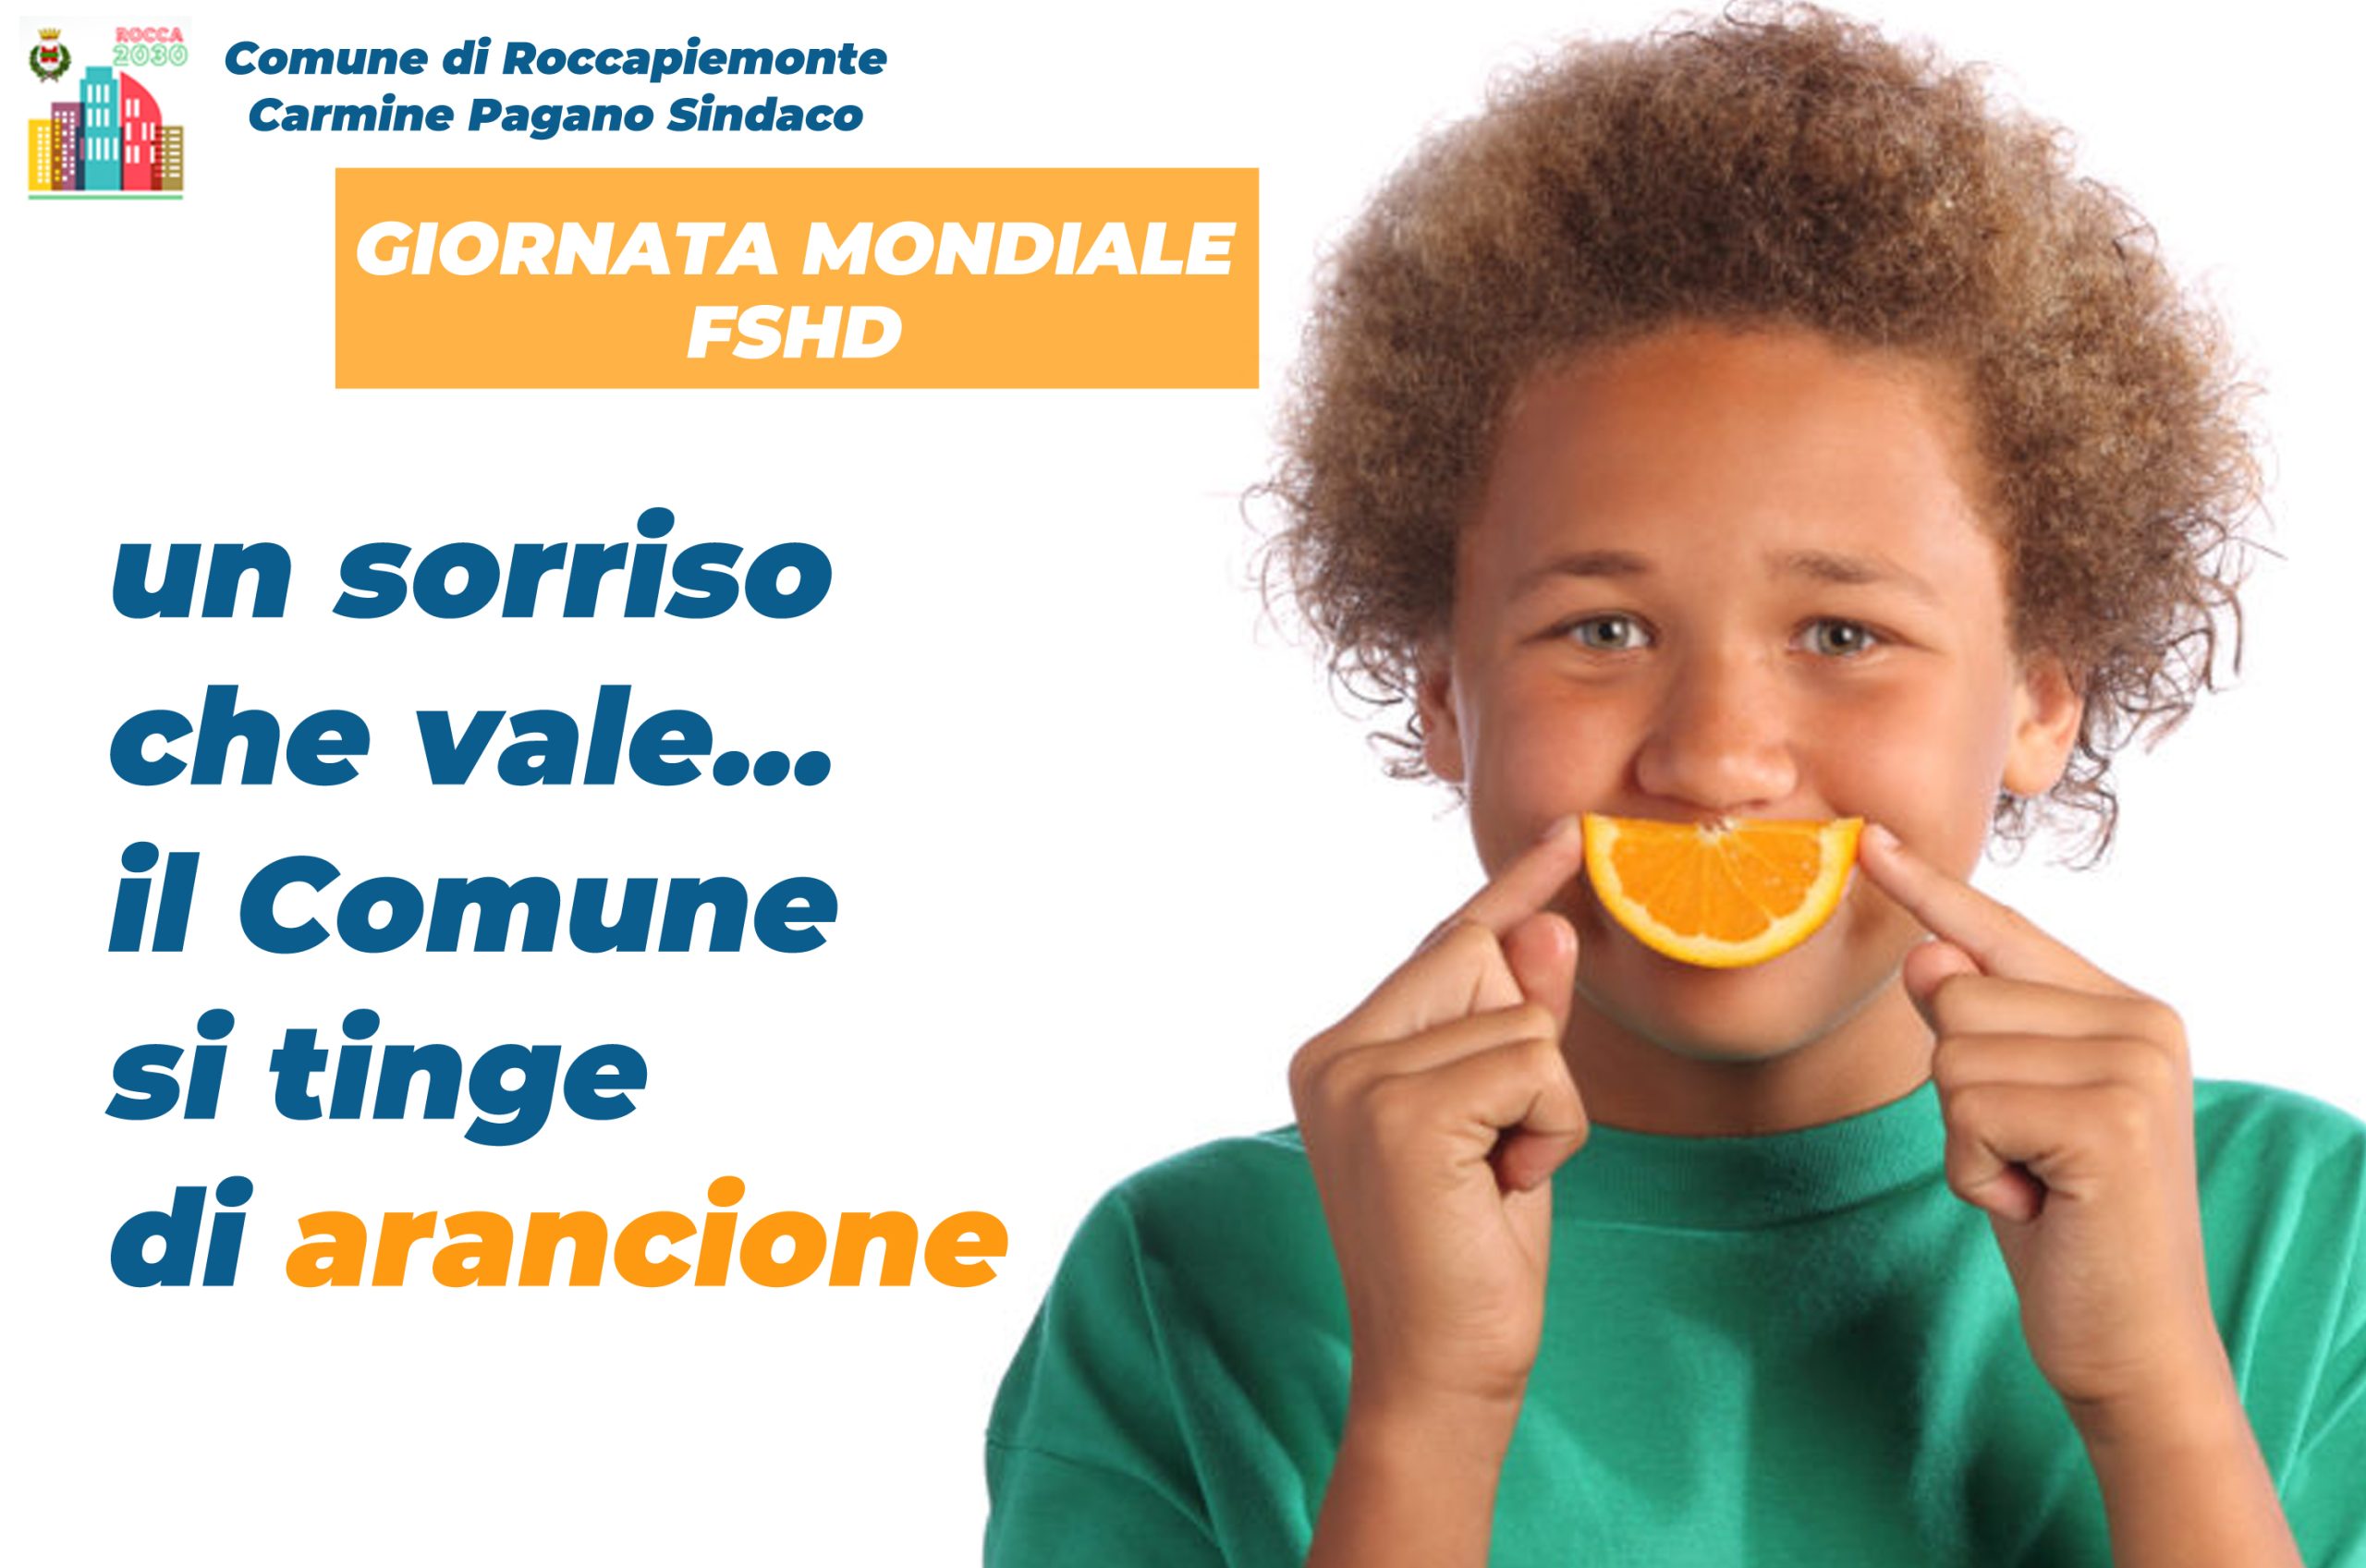 Roccapiemonte: Giornata Mondiale FSHD, Palazzo comunale arancione